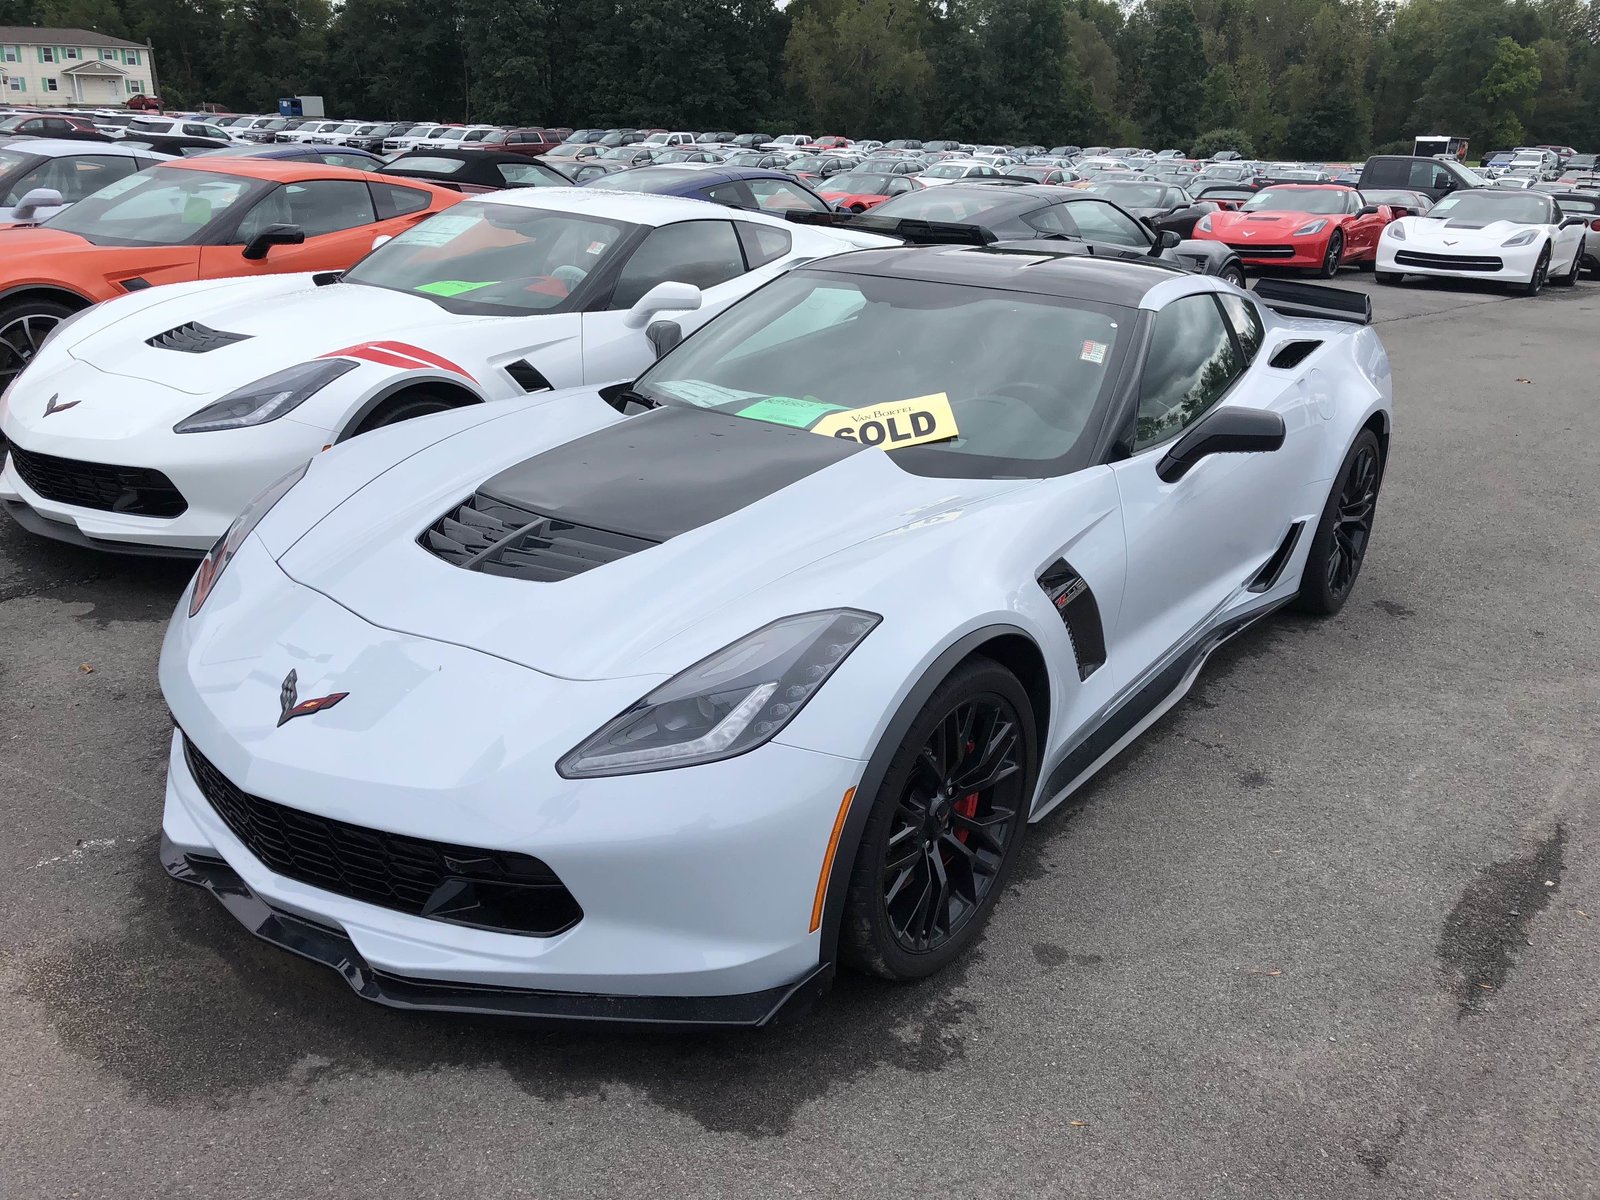 Sold Corvette.jpg